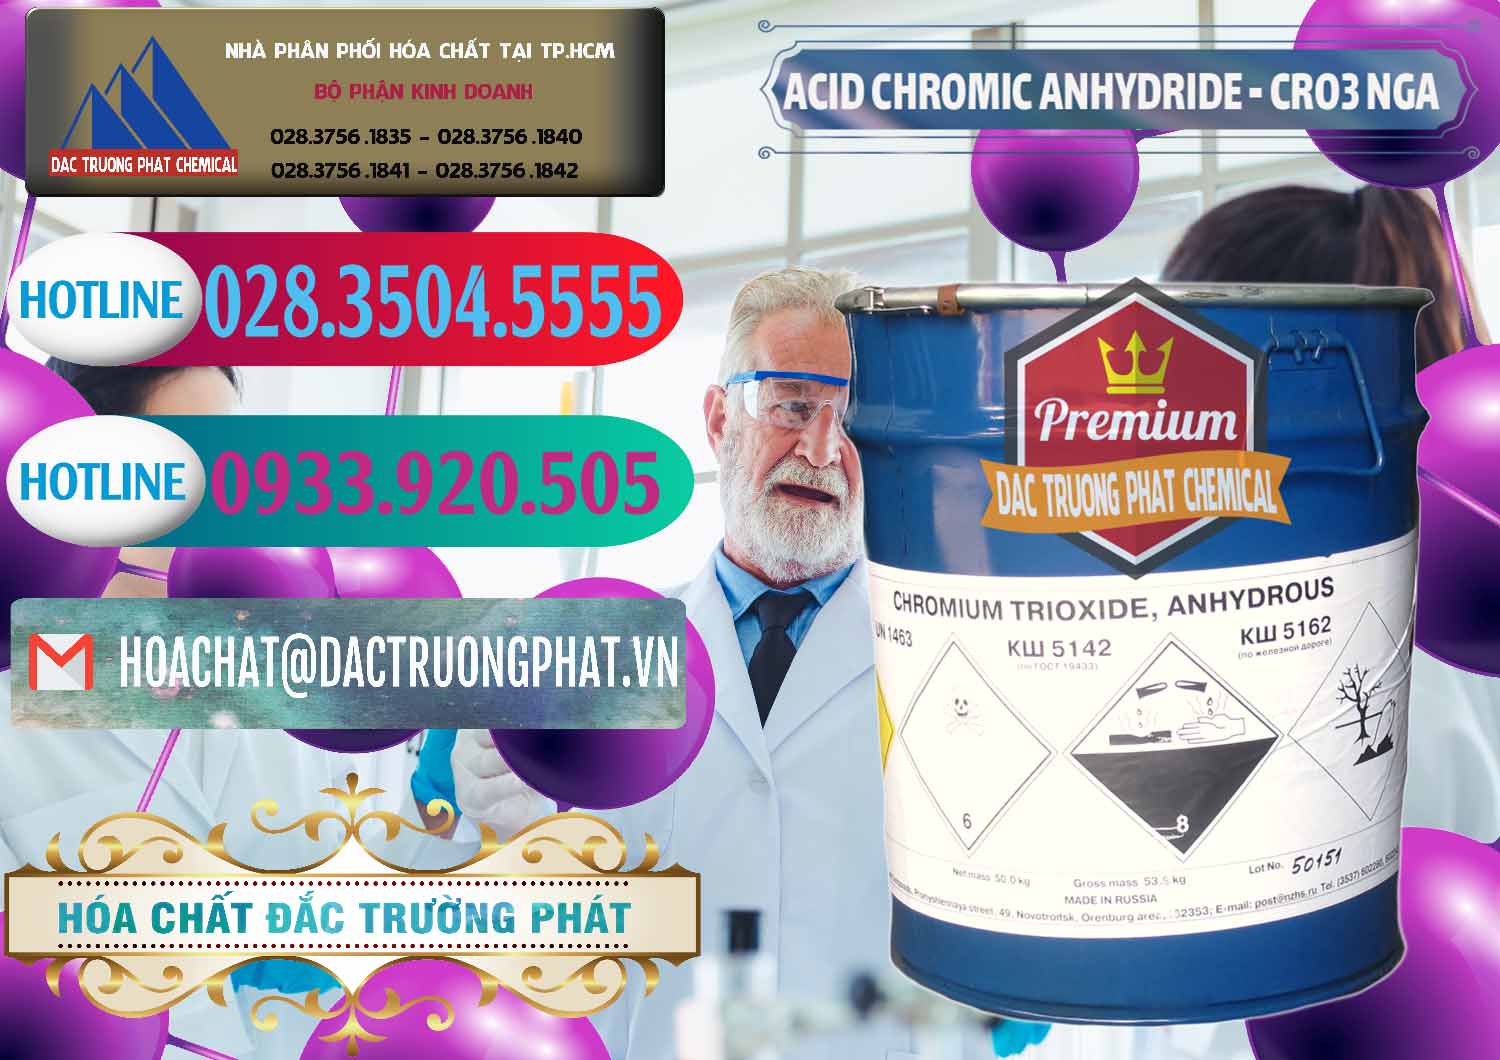 Kinh doanh - bán Acid Chromic Anhydride - Cromic CRO3 Nga Russia - 0006 - Cty chuyên phân phối và nhập khẩu hóa chất tại TP.HCM - truongphat.vn